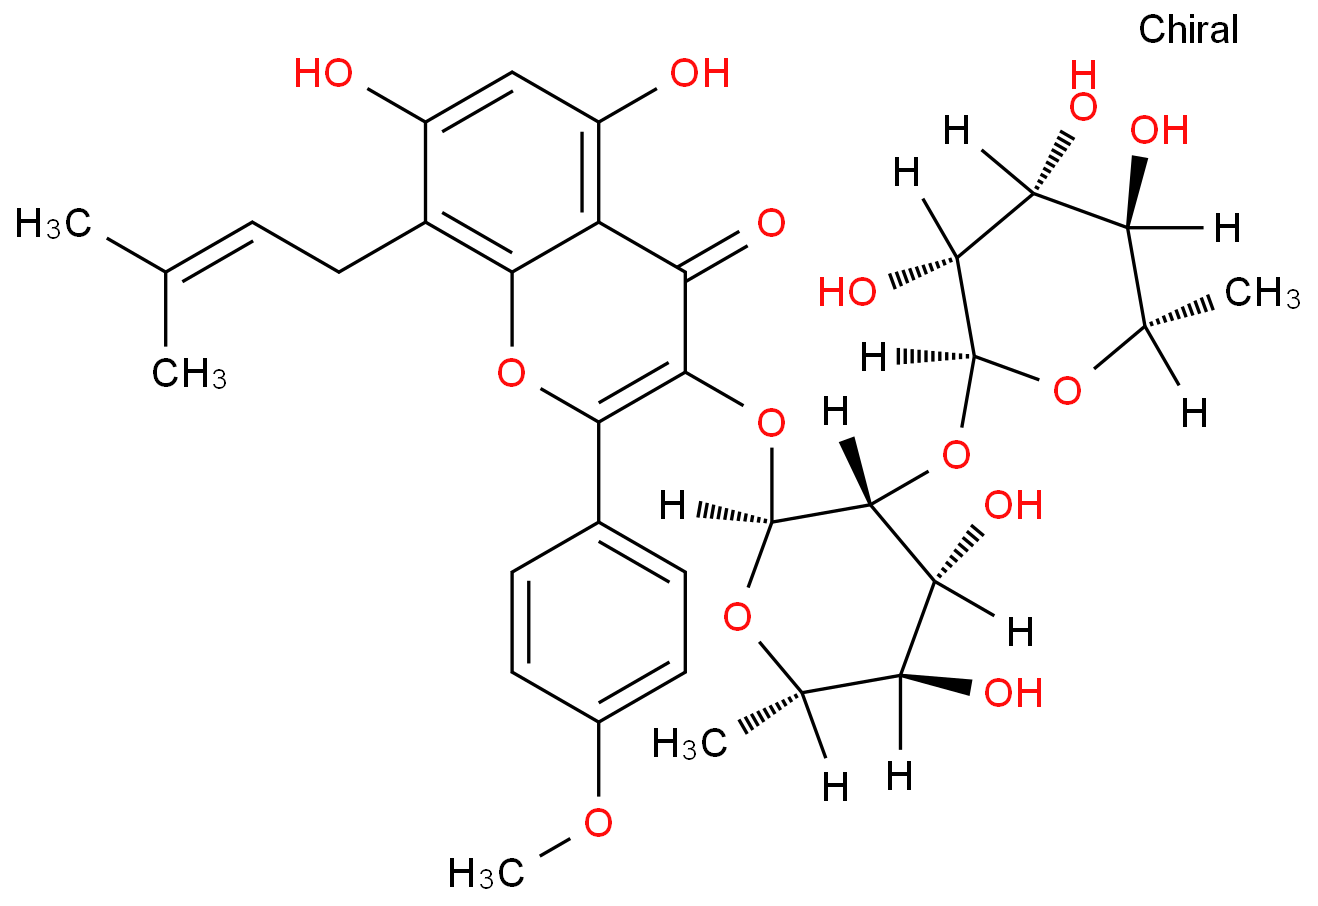 2-(Hydroxymethyl)-4-[(1R)-1-hydroxy-2-{[6-(4-phenylbutoxy)hexyl]a mino}ethyl]phenol